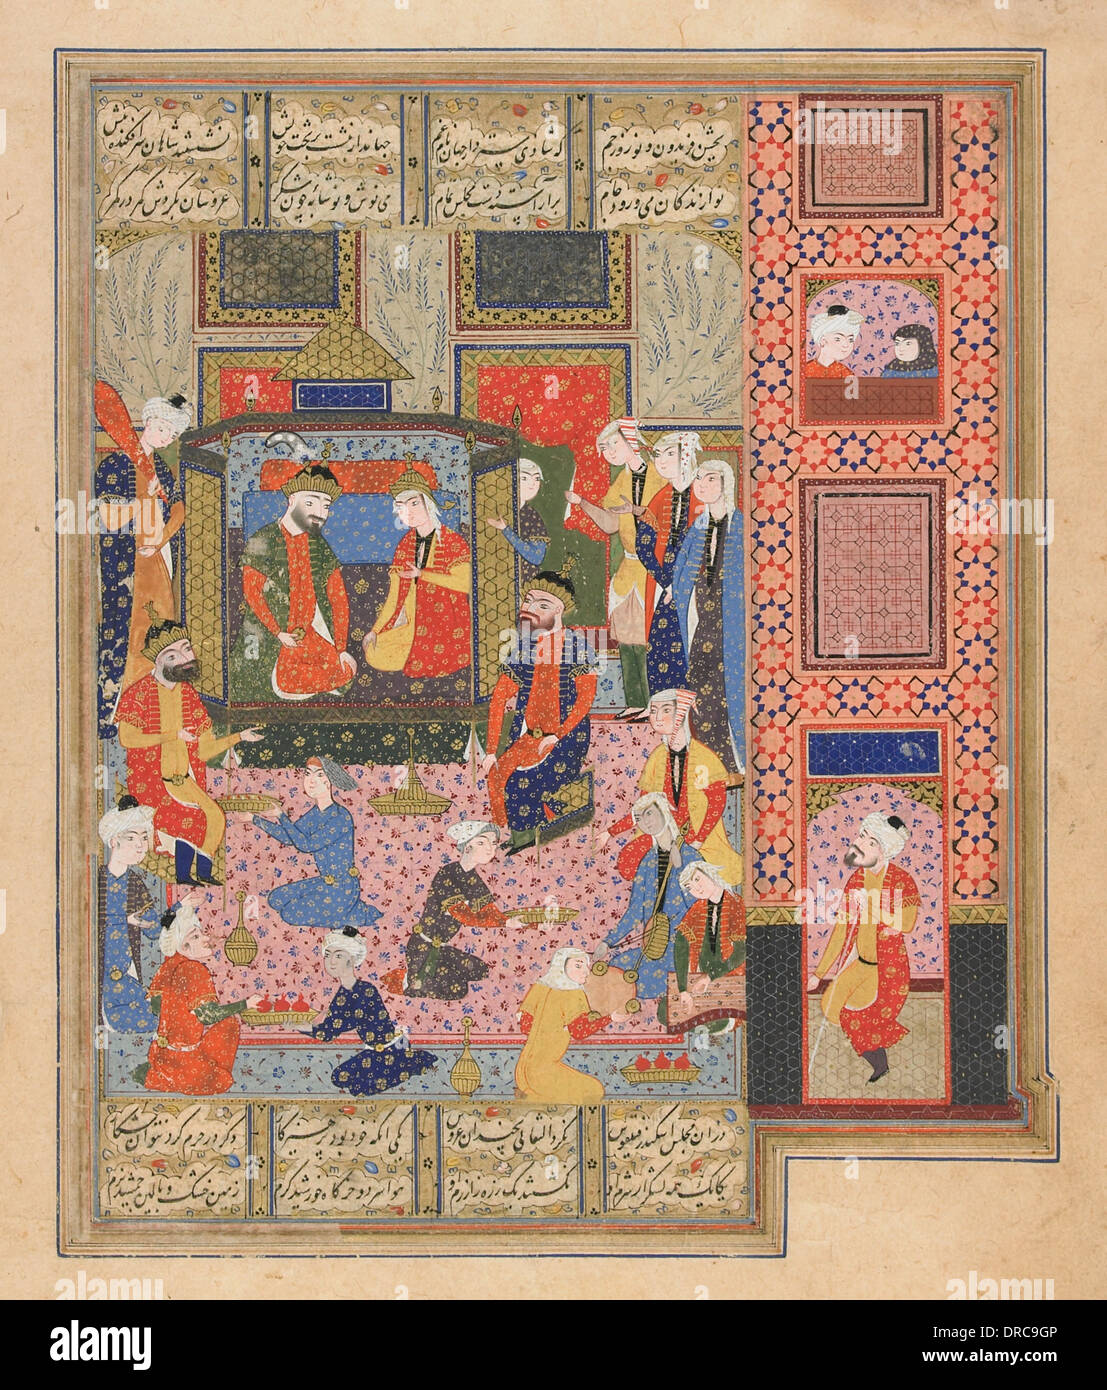 Gemälde, das das Fest von Iskandar und Nushabah aus Nizami Ganjavi's (1141-1209) 'Iskandarnamah' (das Buch von Alexander dem Großen) darstellt. Persische Handschrift des 16.. Jahrhunderts. Auf seinem Weg ins Land der Finsternis besucht Alexander die Königin von Barda, Nushabah, organisiert für ihn ein "ishrat" (großes Fest) und lädt ihn ein, neben ihr auf einem goldenen Thron zu sitzen. Diener und Musiker umgeben das Paar. Illustration aus Nizami Ganjavis 'Iskandarnamah' (das Buch Alexanders des Großen)Manuskript des 16.. Jahrhunderts. Stockfoto